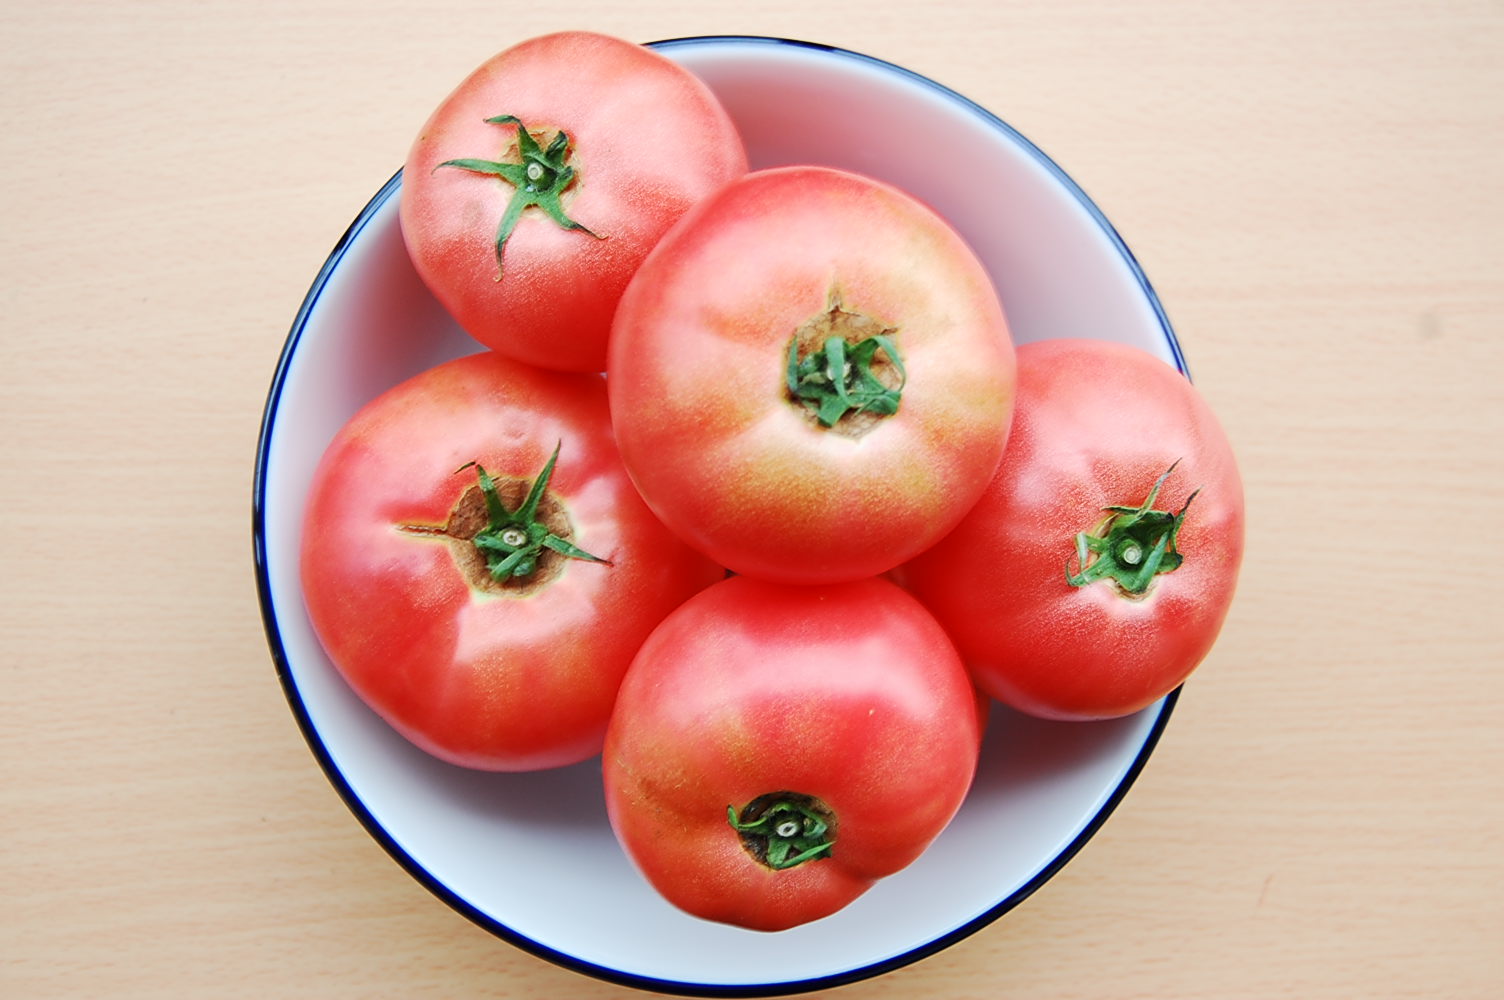 365マーケット ザ マルシェで群馬産トマトが登場。